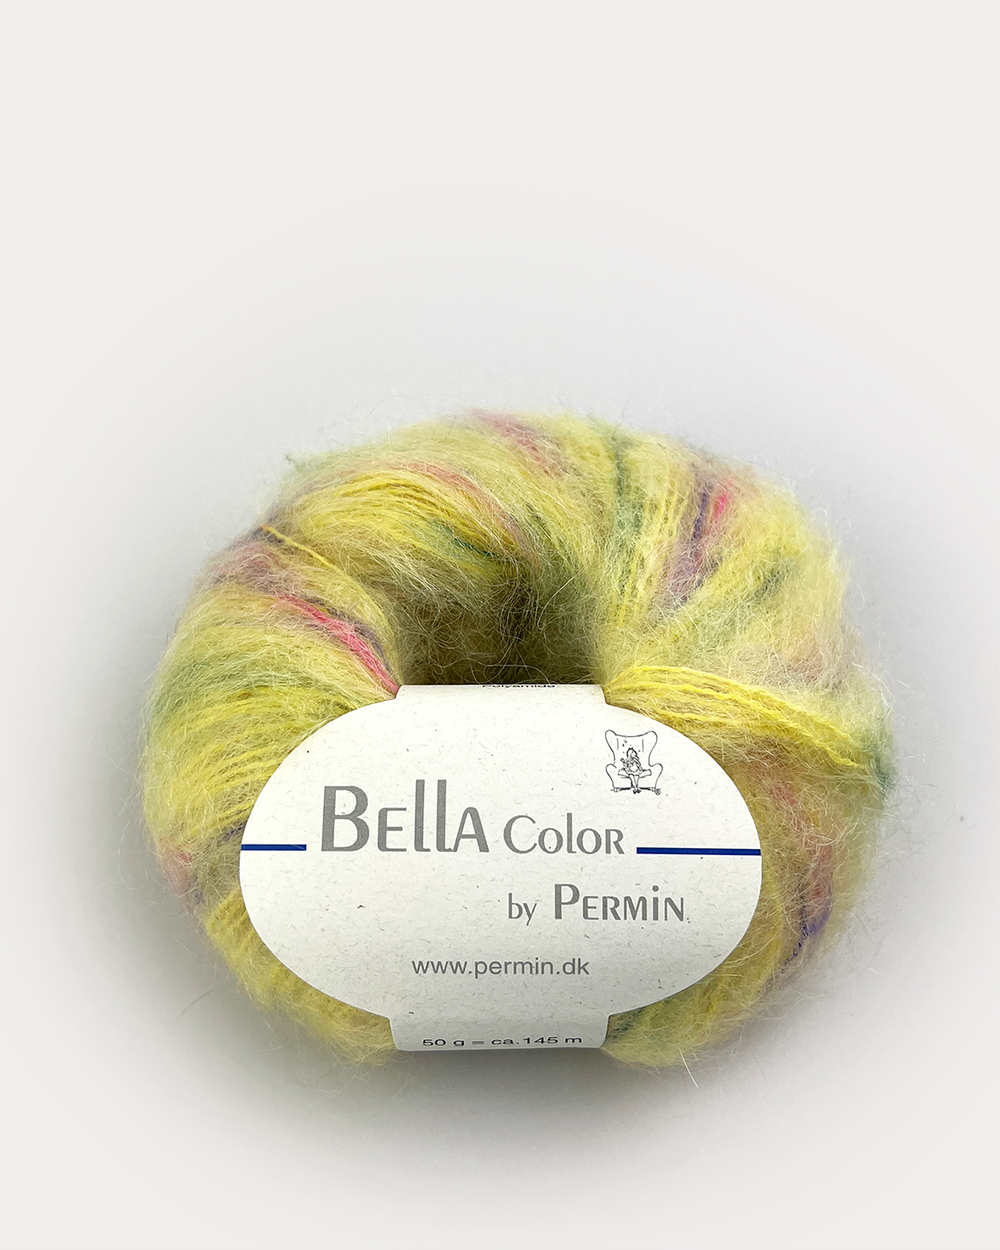 Пряжа для вязания Bella Color 883169, 75% мохер, 20% шерсть, 5% полиамид (50г 145м Дания)